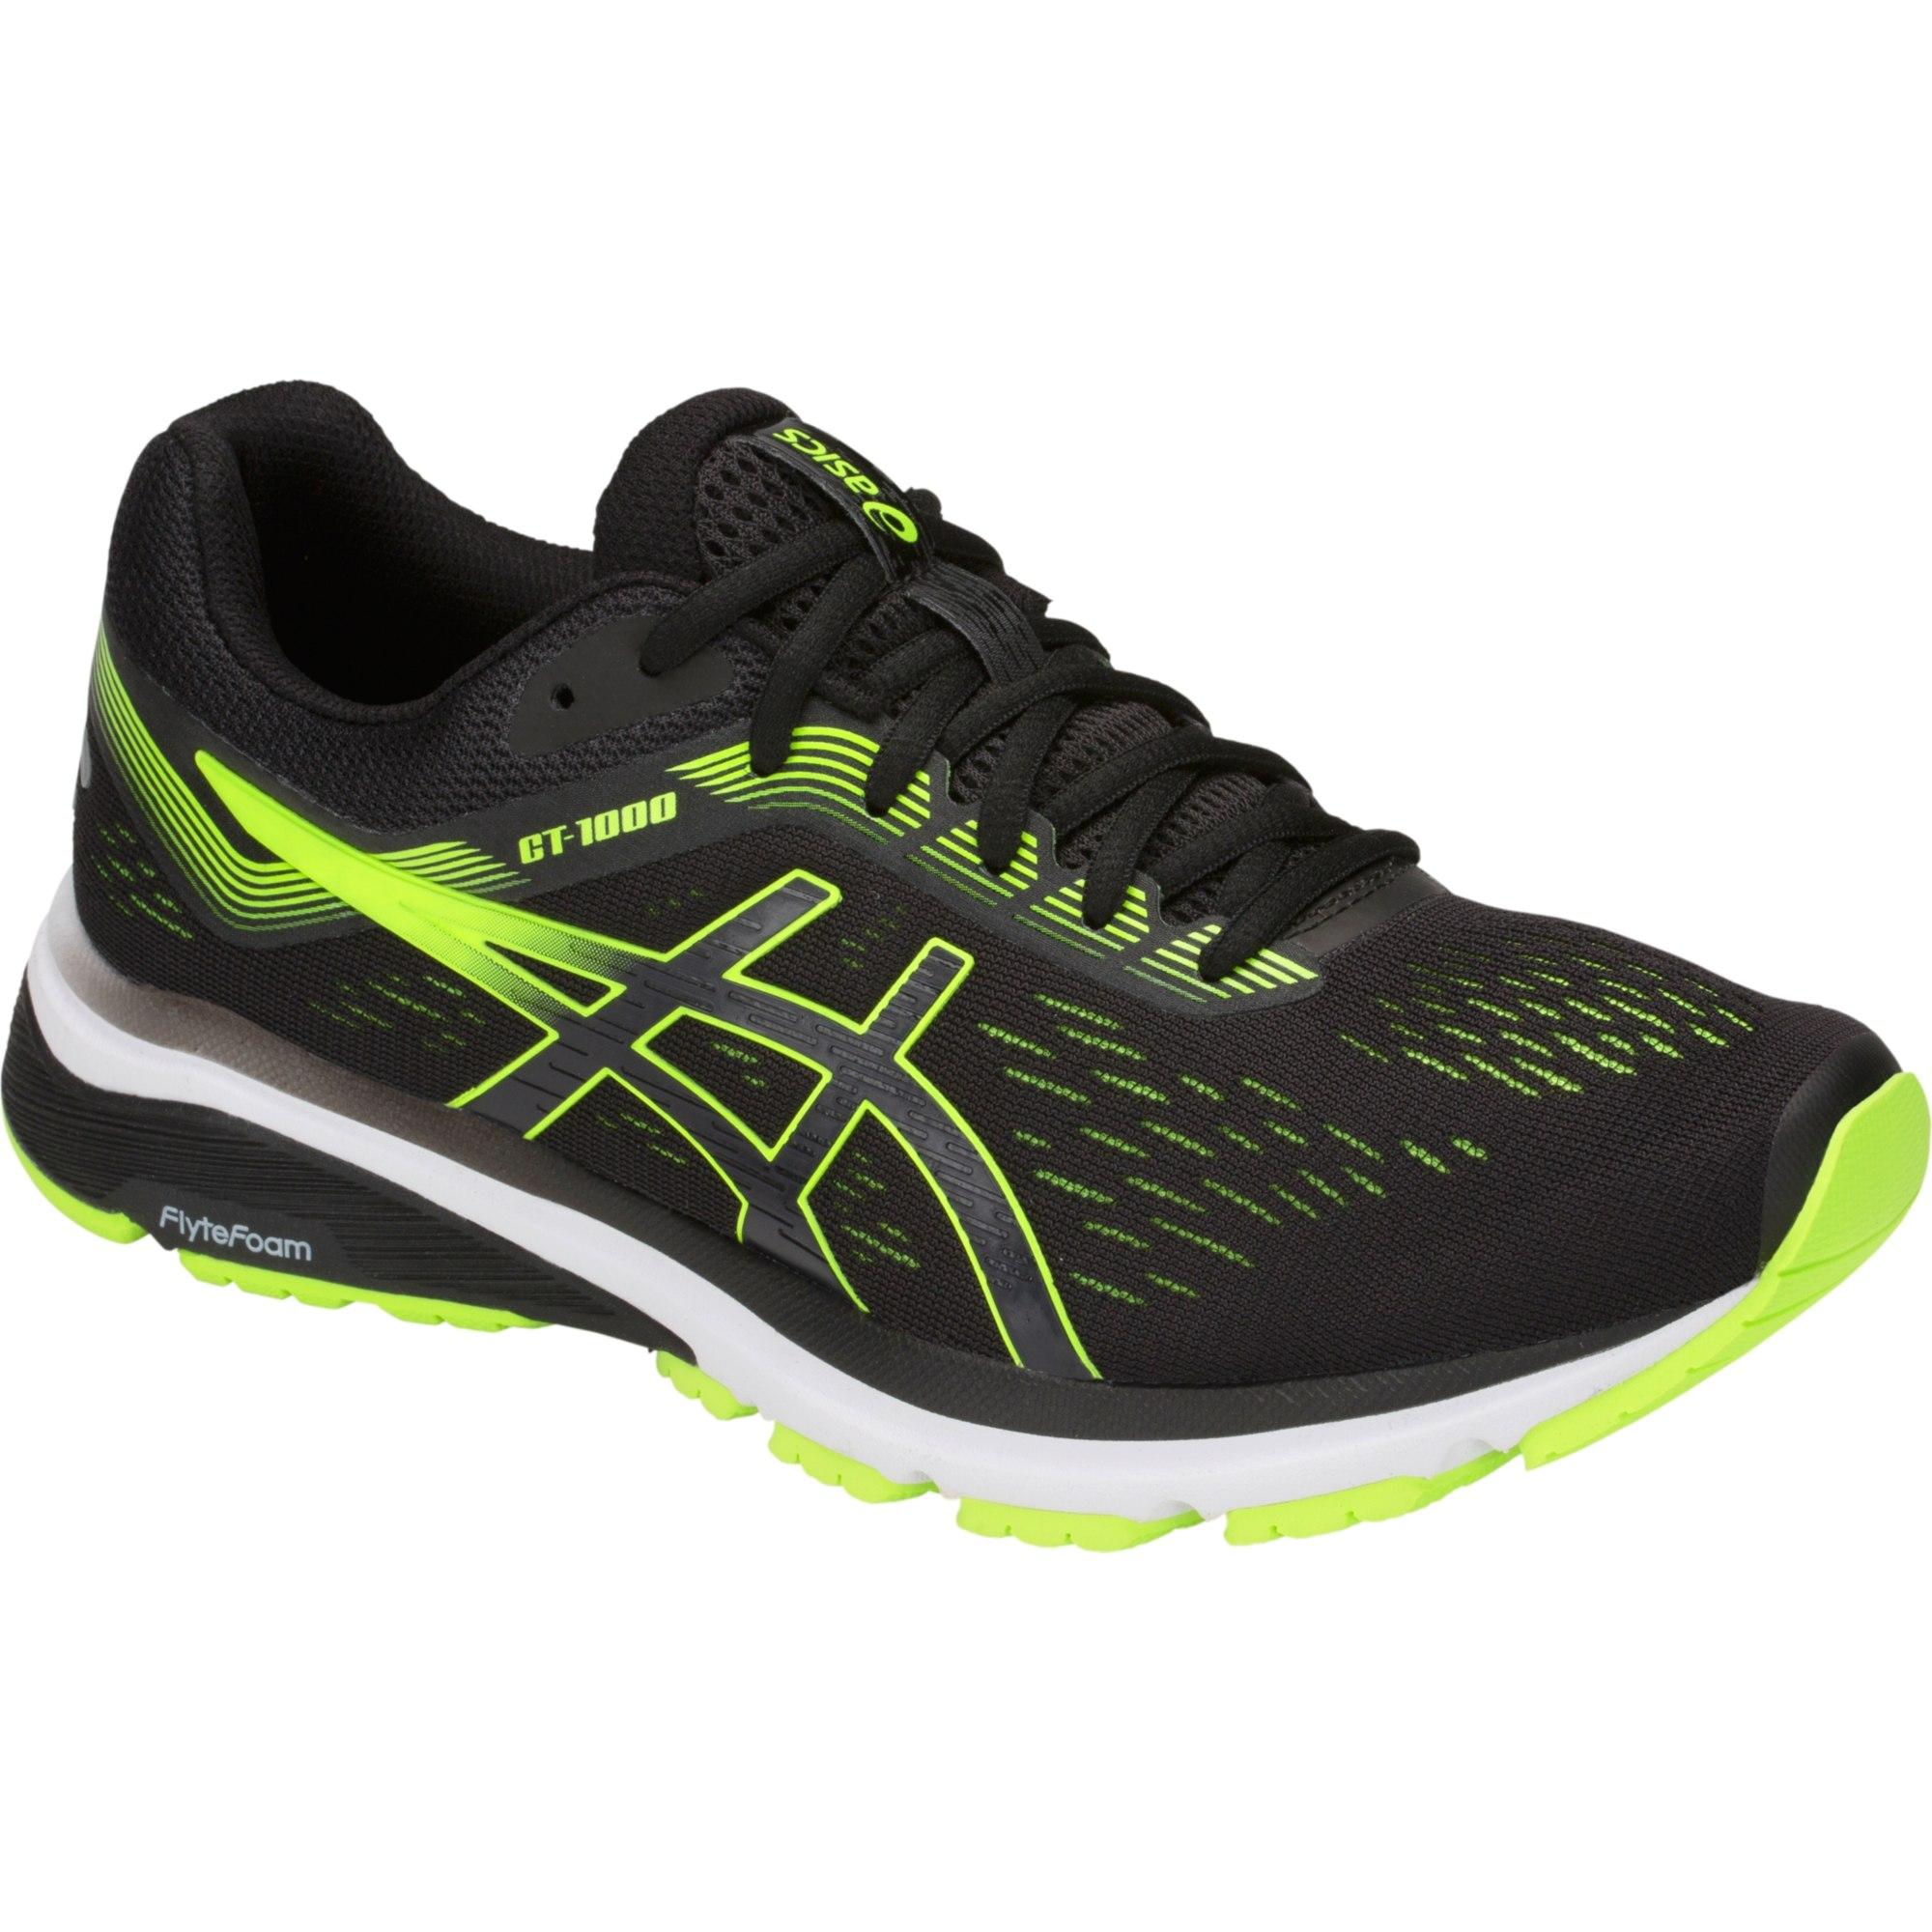 Asics Mens GT-1000 7 Running Shoes - Black/Hazard Green - Tennisnuts.com